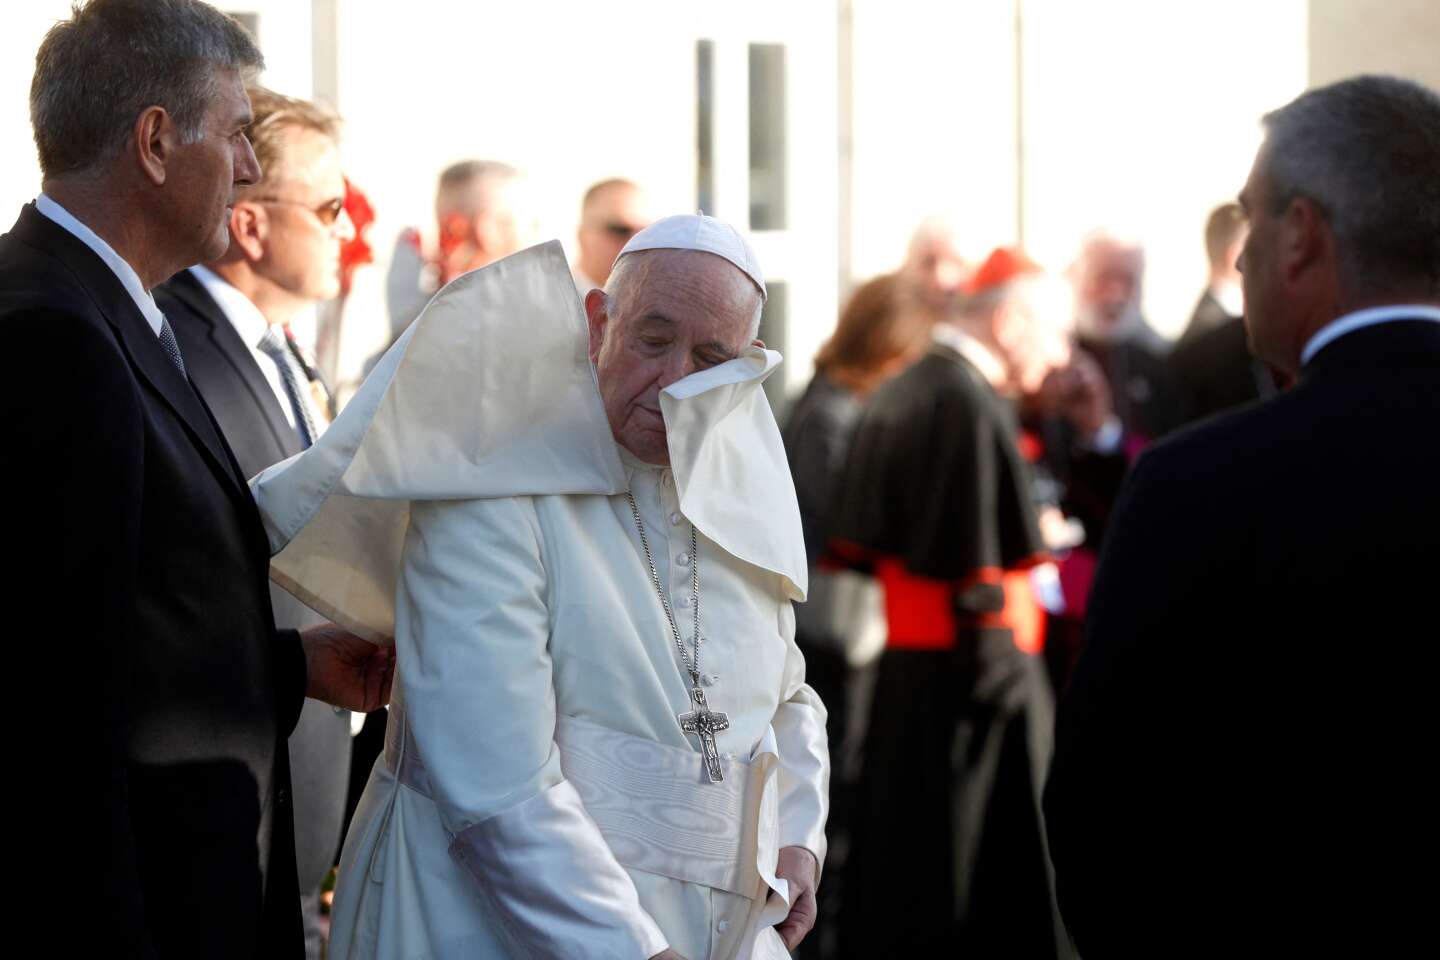 In Canada, Pope Francis’ “penitential pilgrimage” reveals his deteriorating health